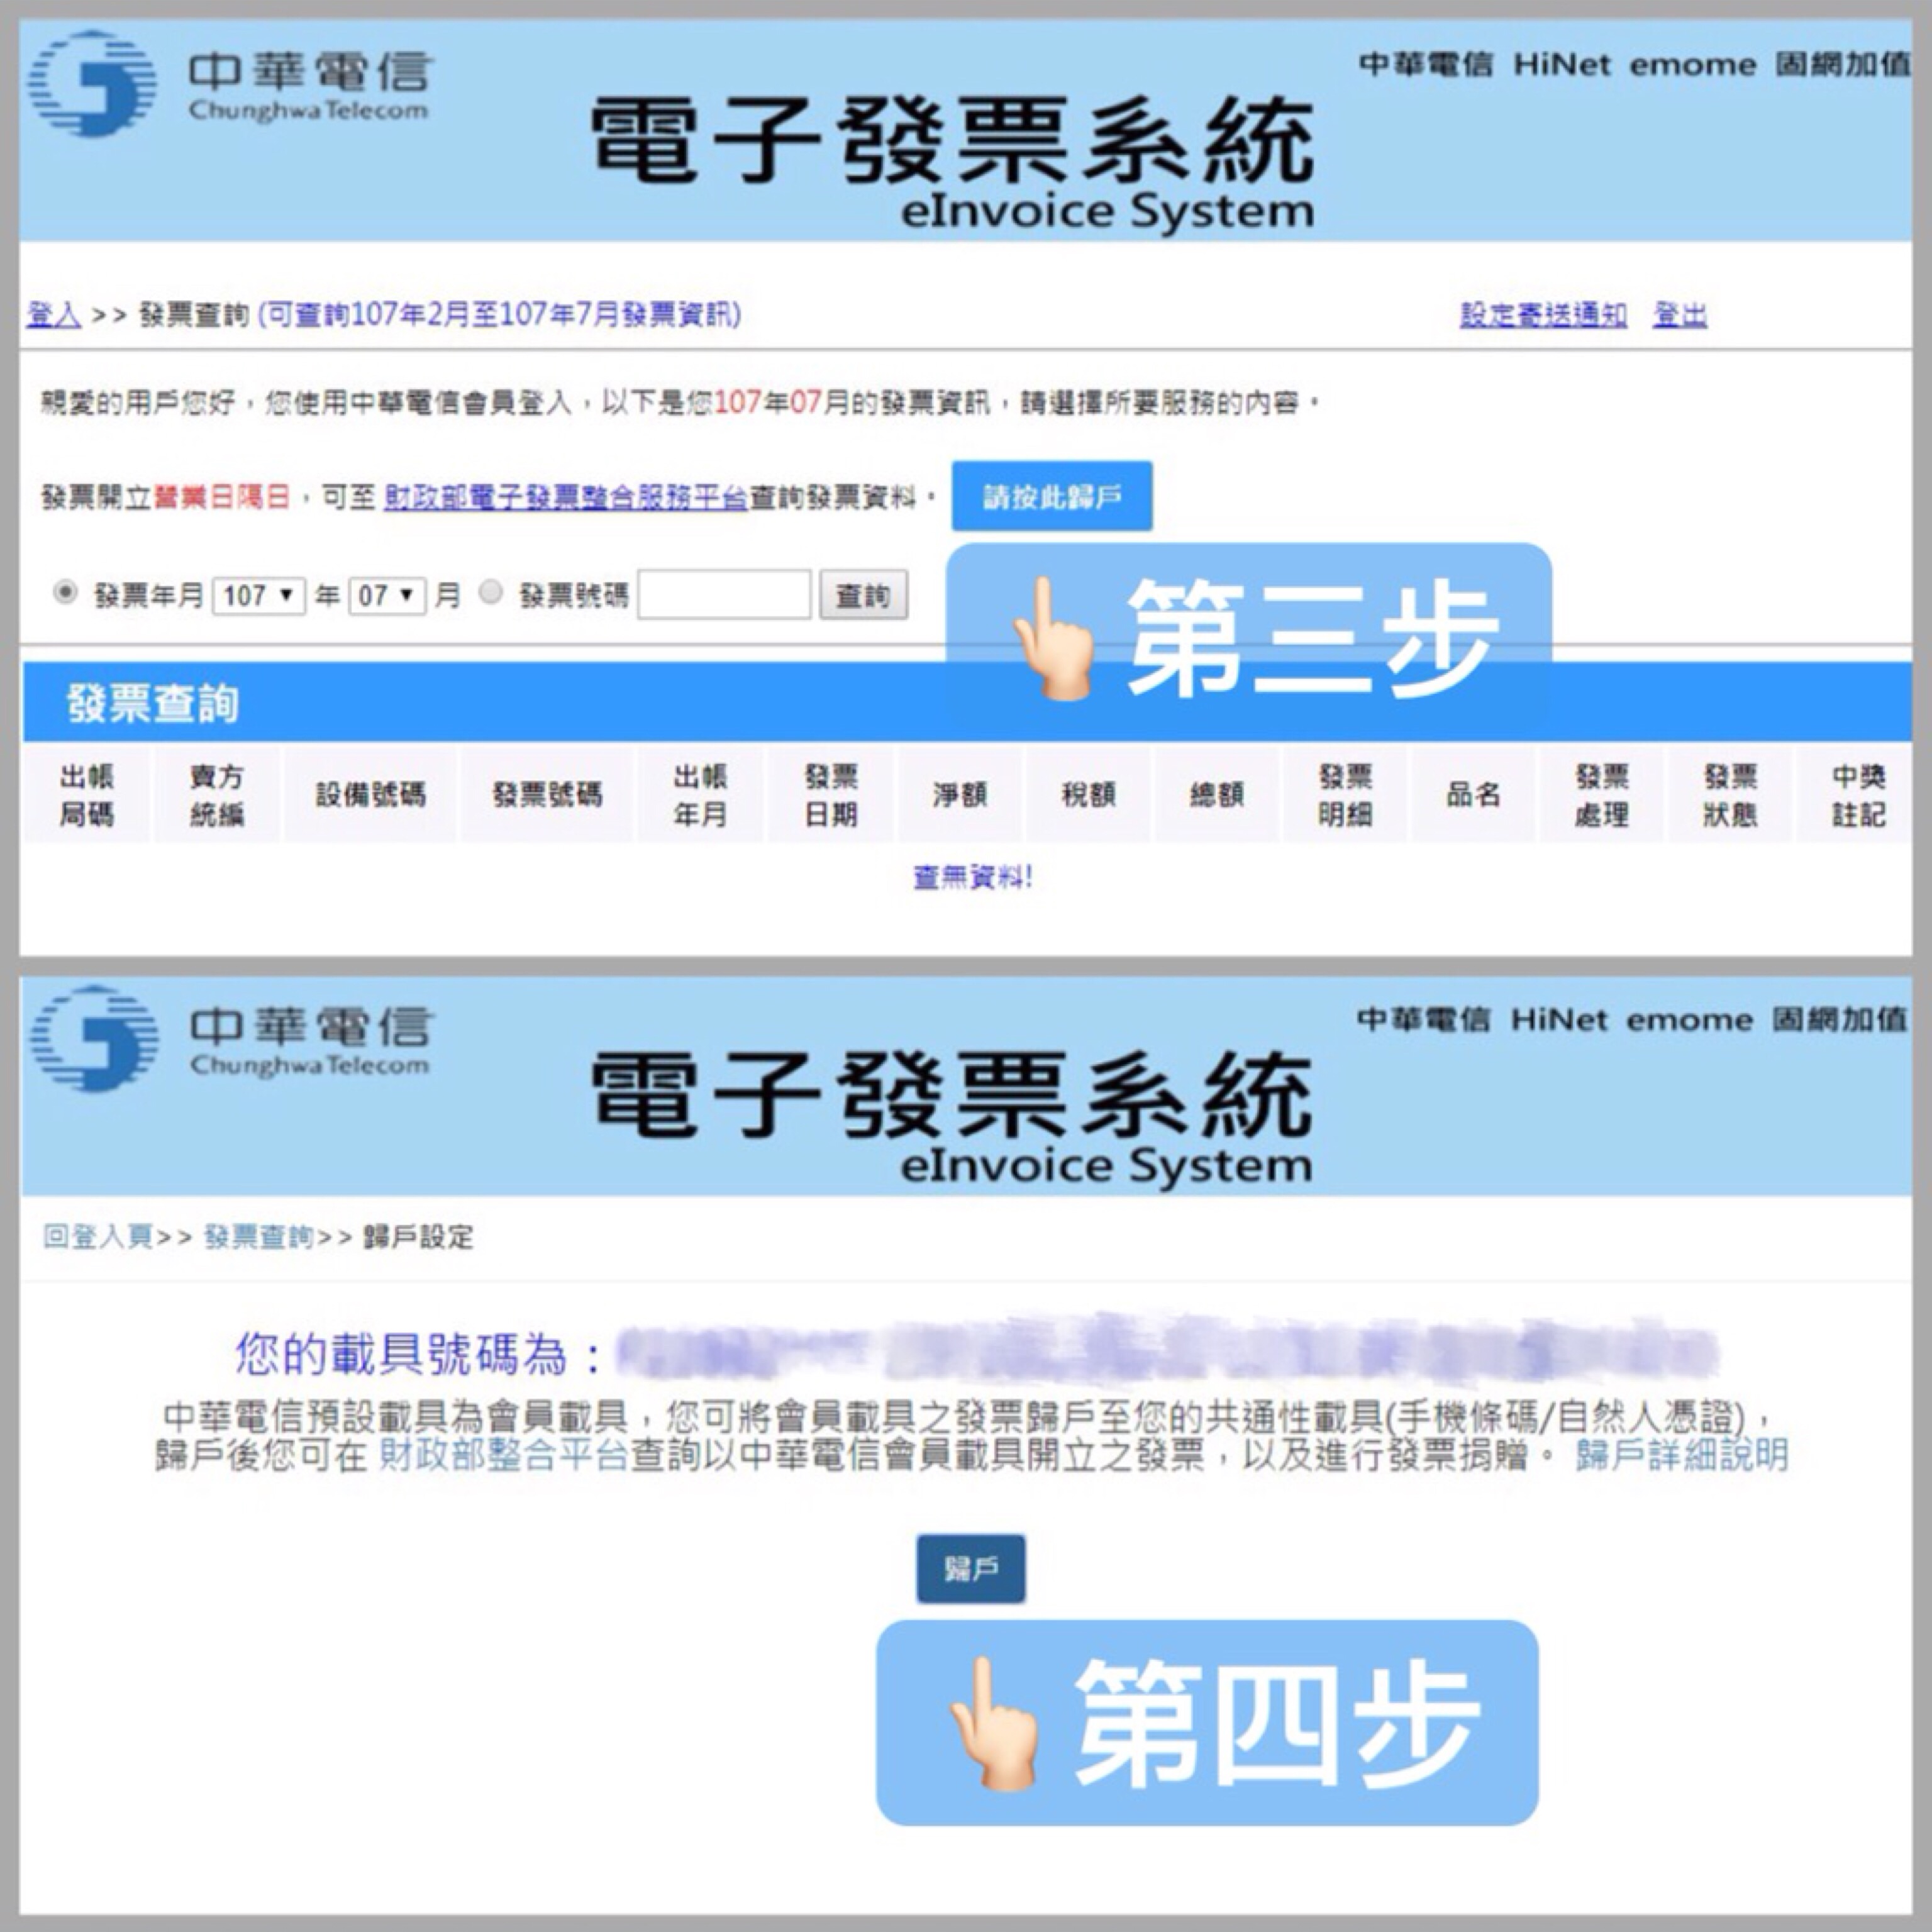 4 15 如何歸戶 中華電信 電子發票 雲端發票使用說明